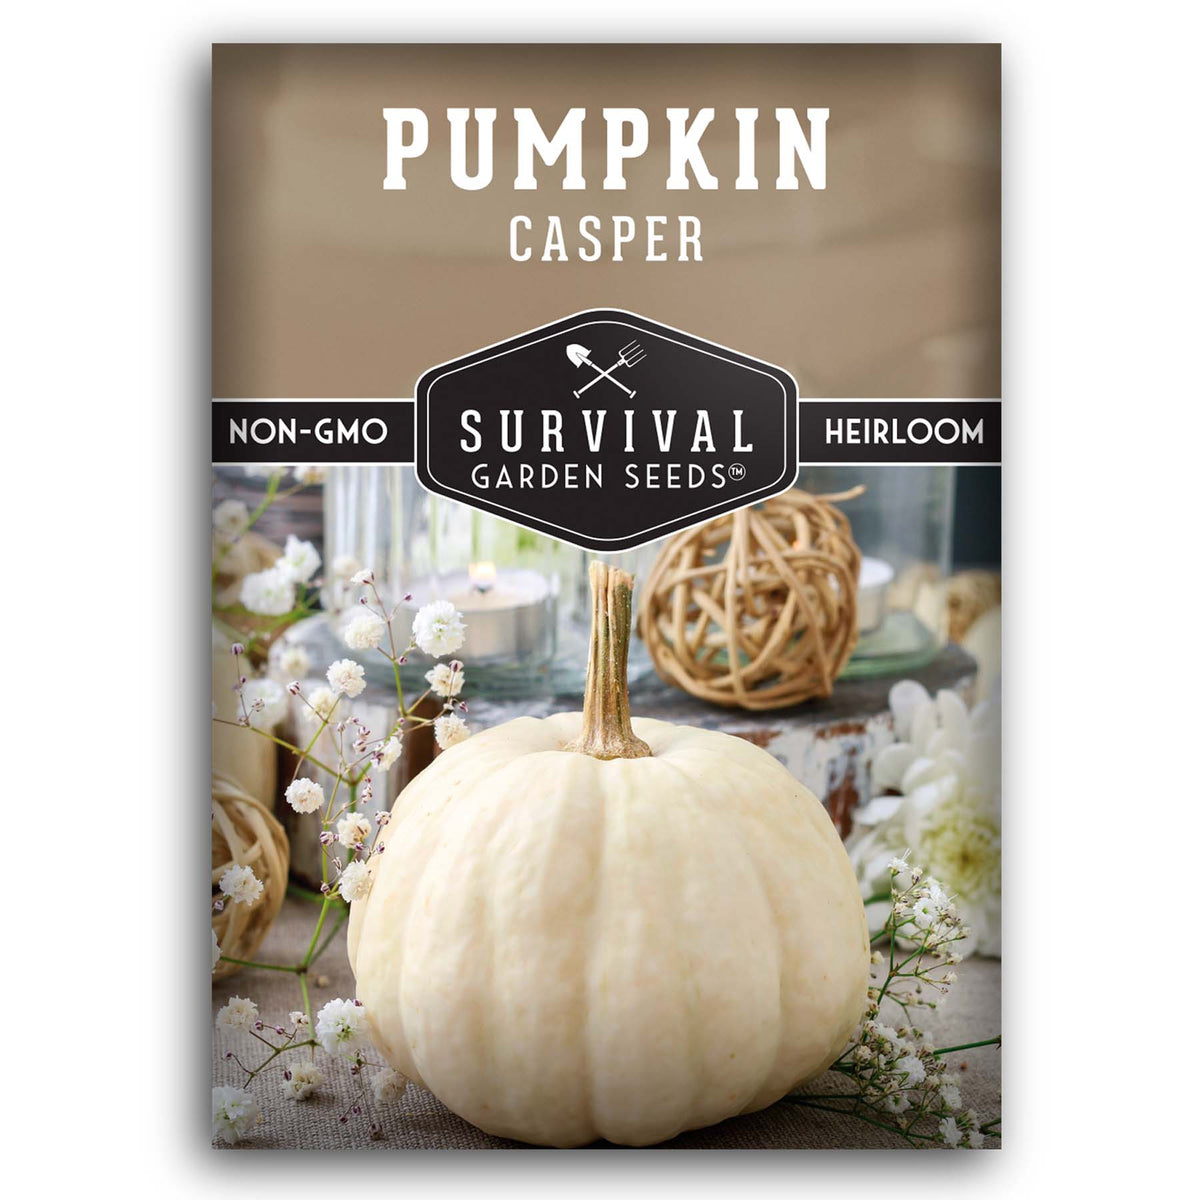 Casper Pumpkin seeds for planting